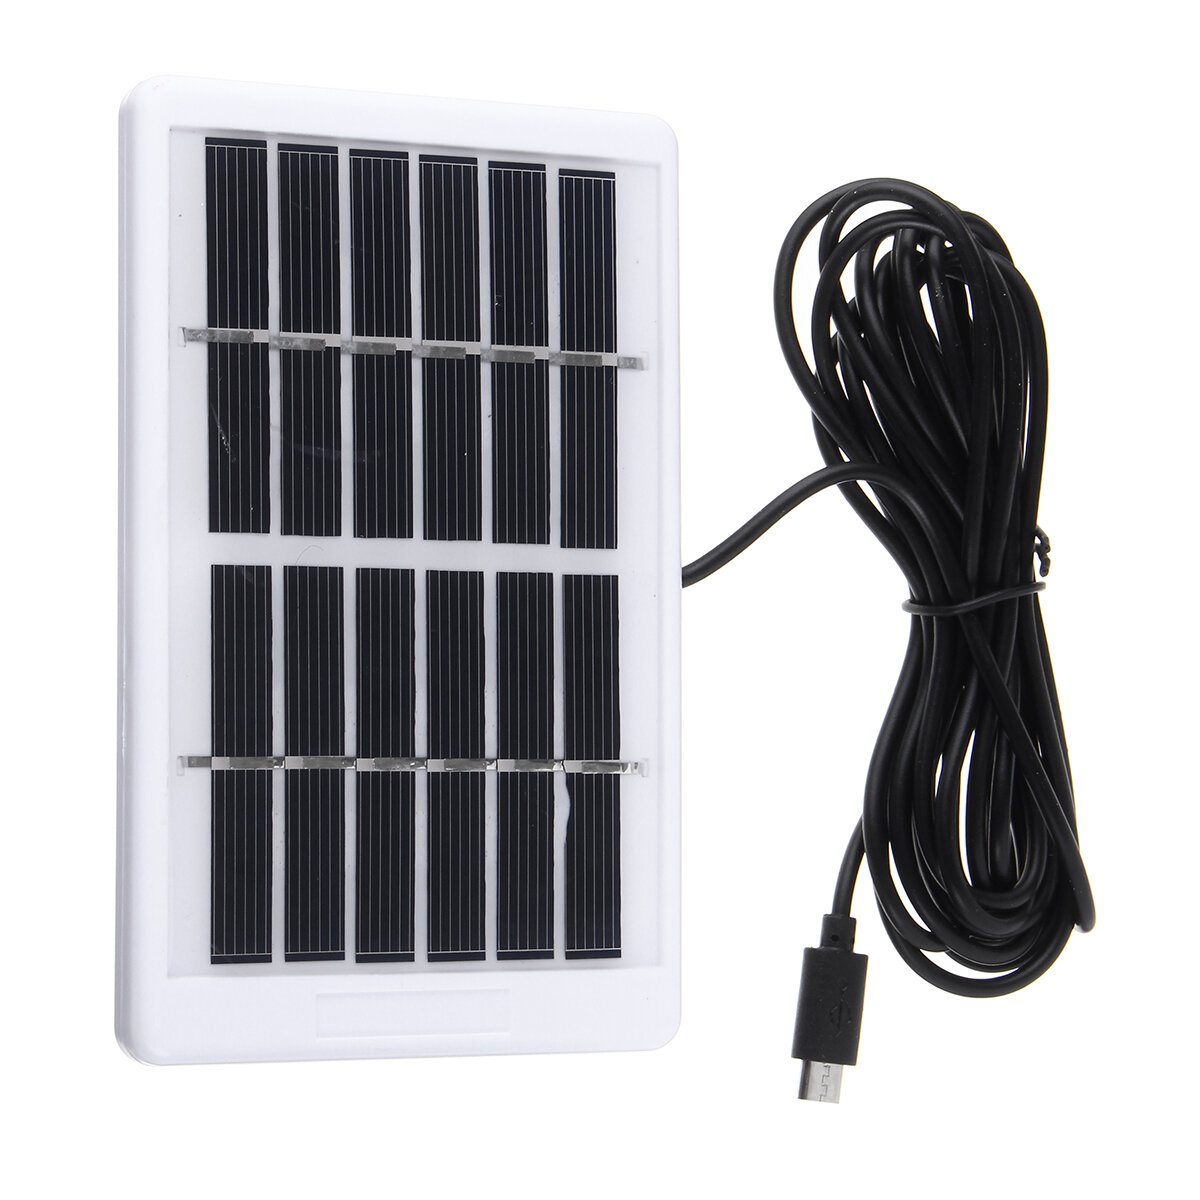 

6V 1.2W Solar Power Panel USB Charging Portable for LED Mosquito Killer Light